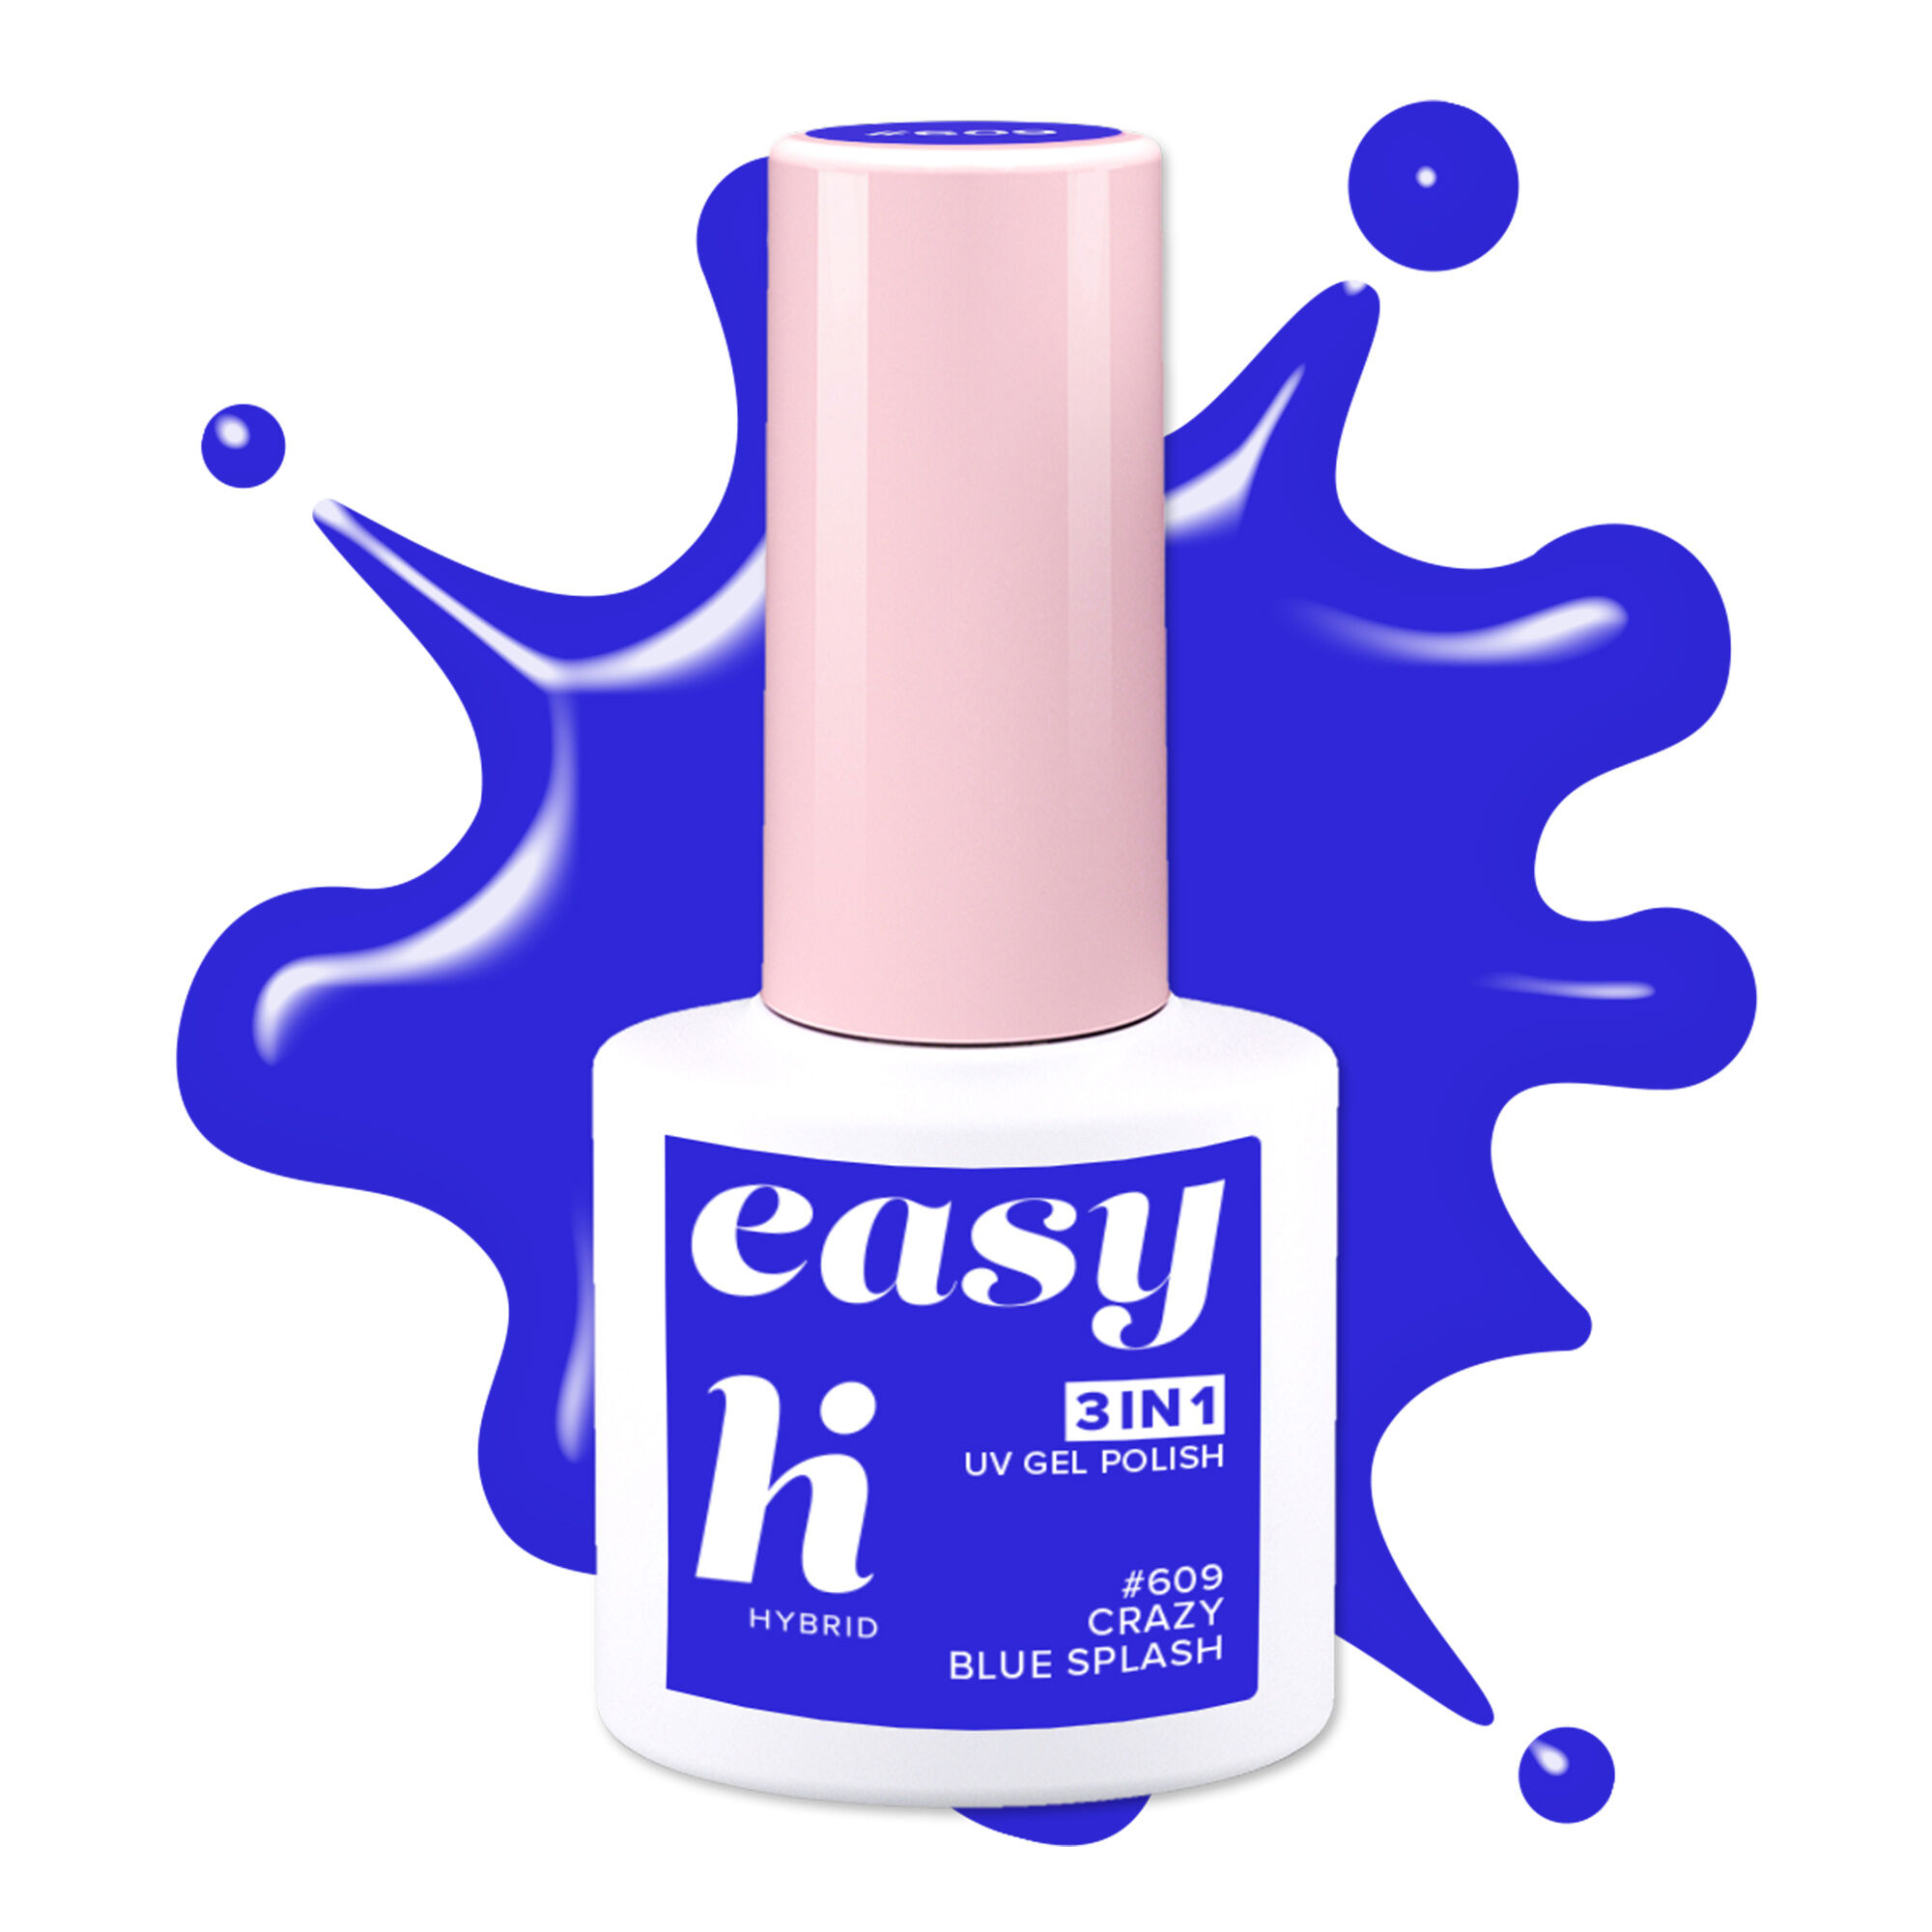 Гибридный лак для ногтей 609 crazy blue splash Hi Hybrid Easy 3W1, 5 мл